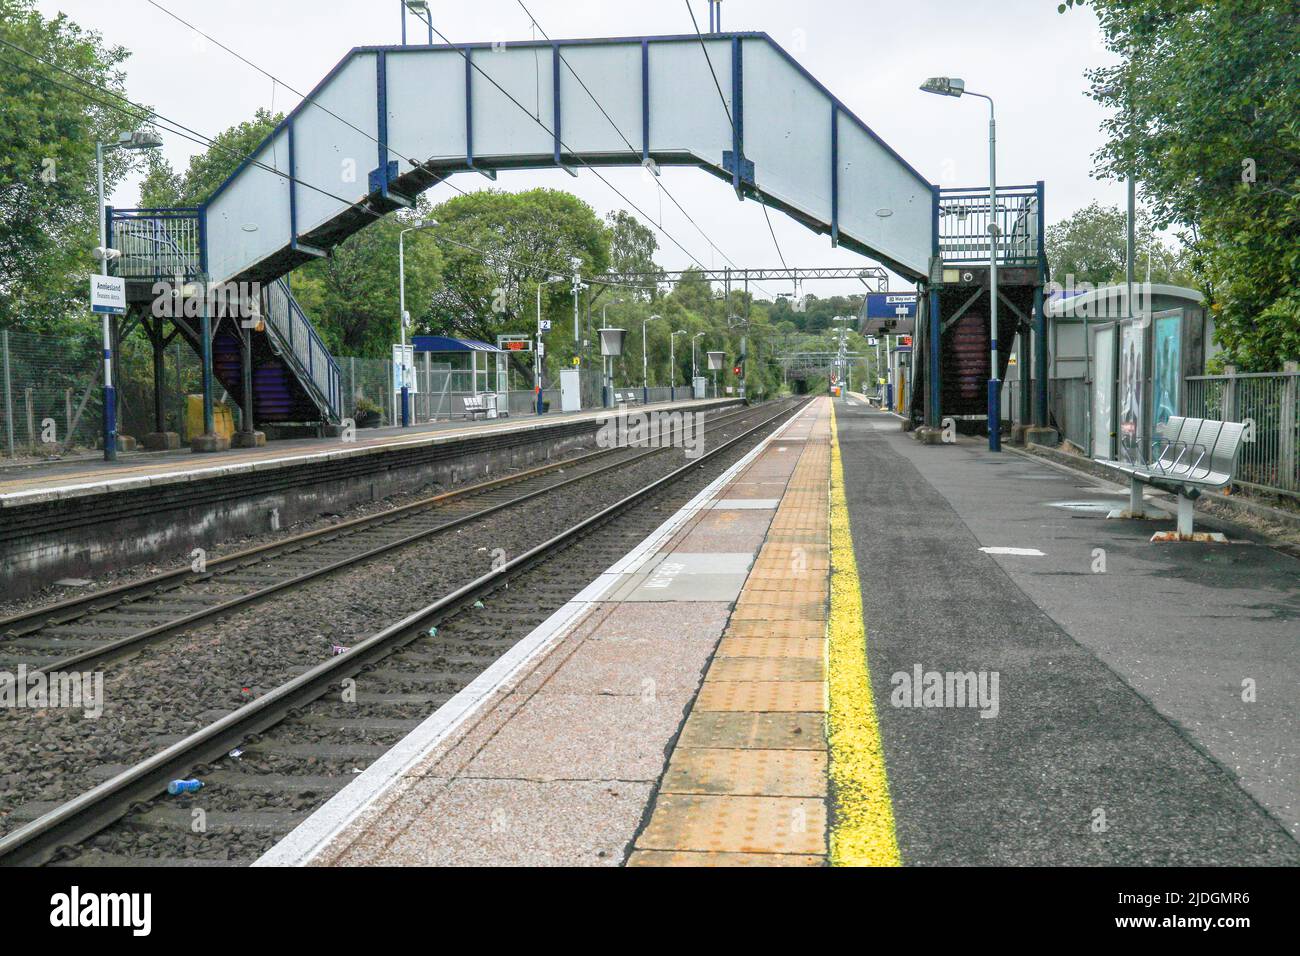 Ein verlassenes Bahnhofsgebäude in Glasgow während der Hauptreisezeit, als die RMT-Streikaktion im Juni 2022 beißt Stockfoto